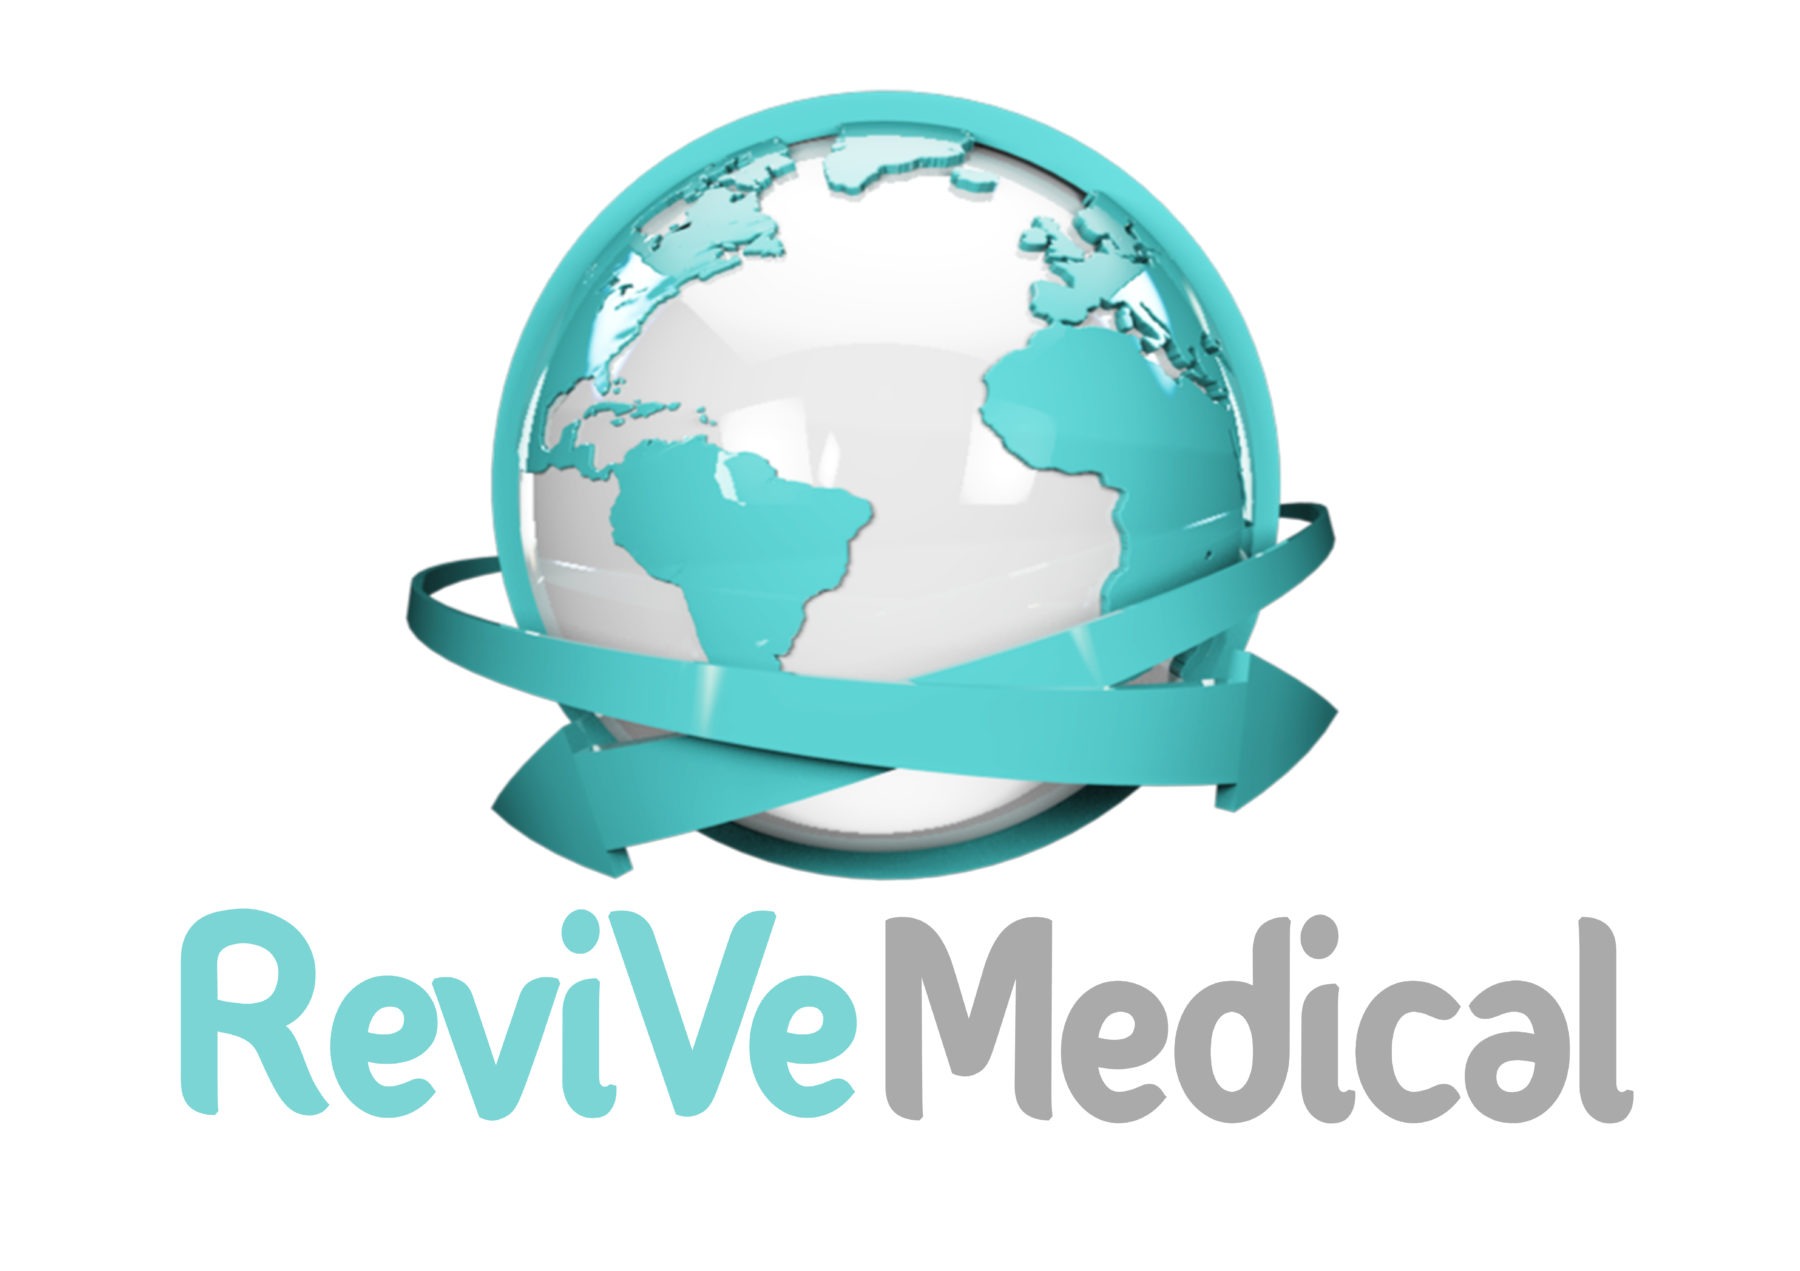 3.1 Revive Medical